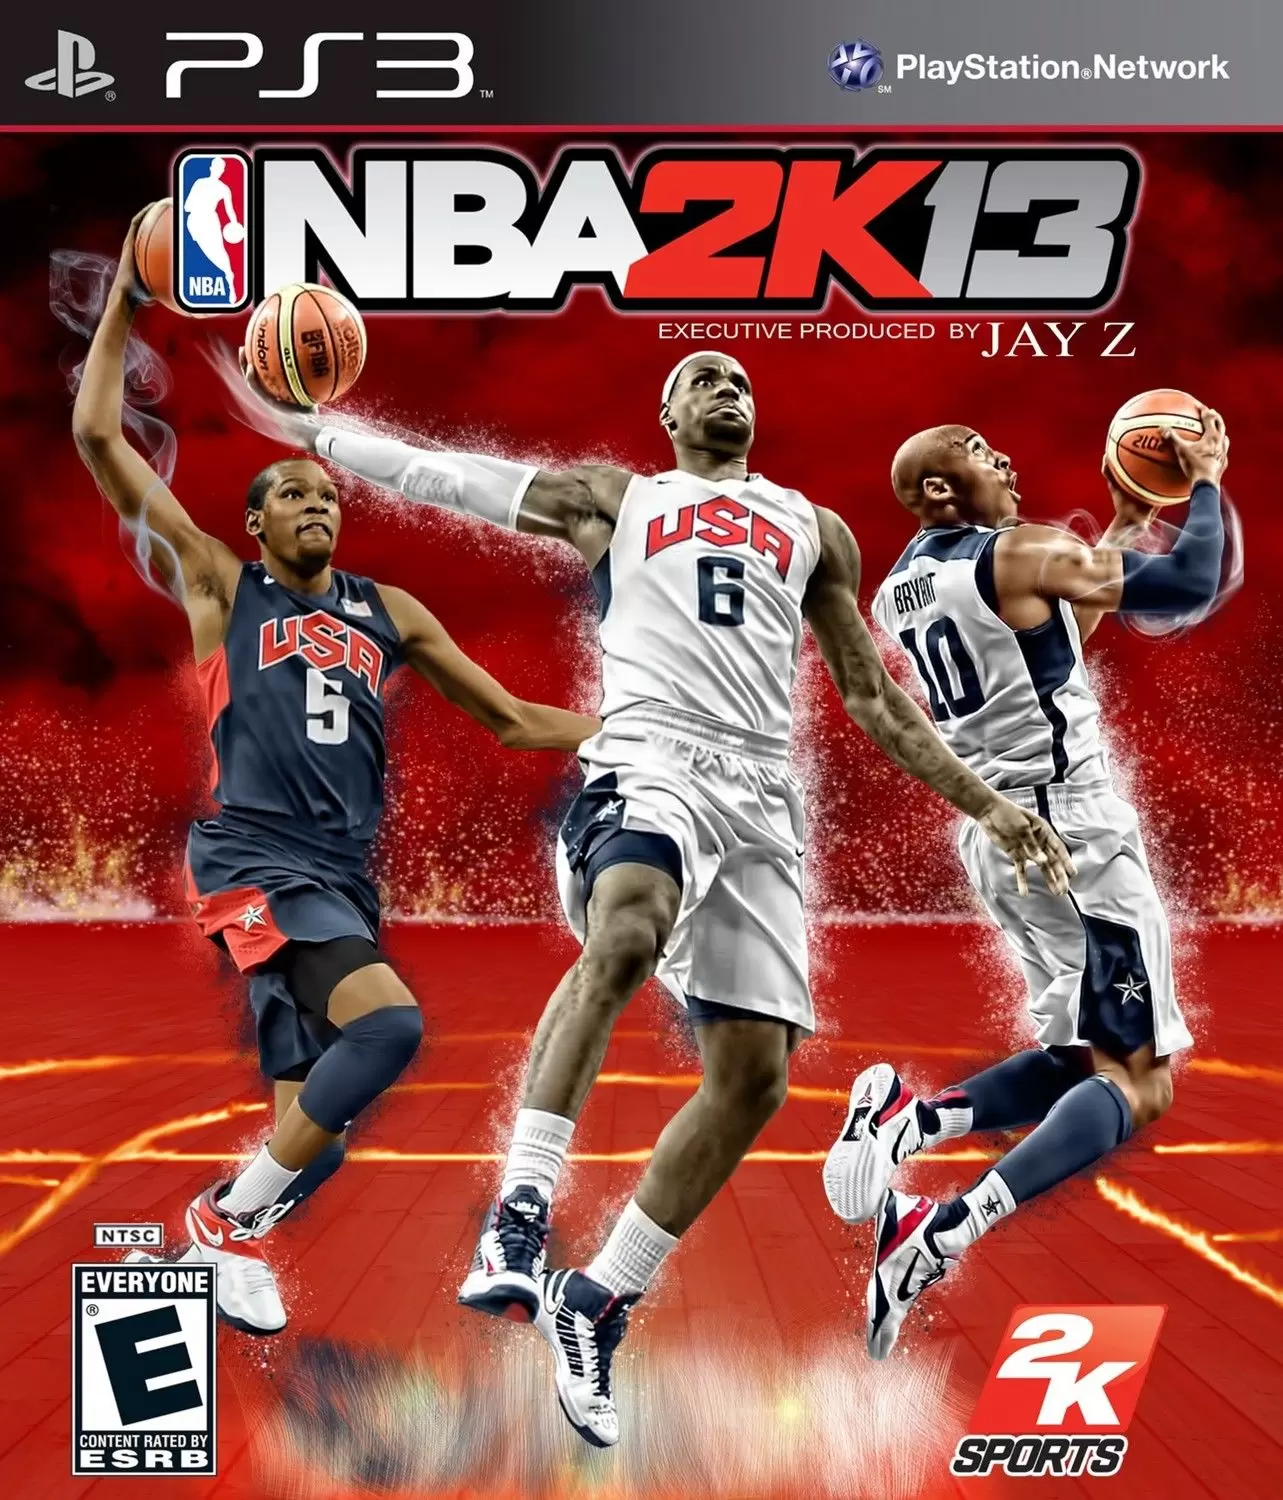 PS3 Games - NBA 2K13